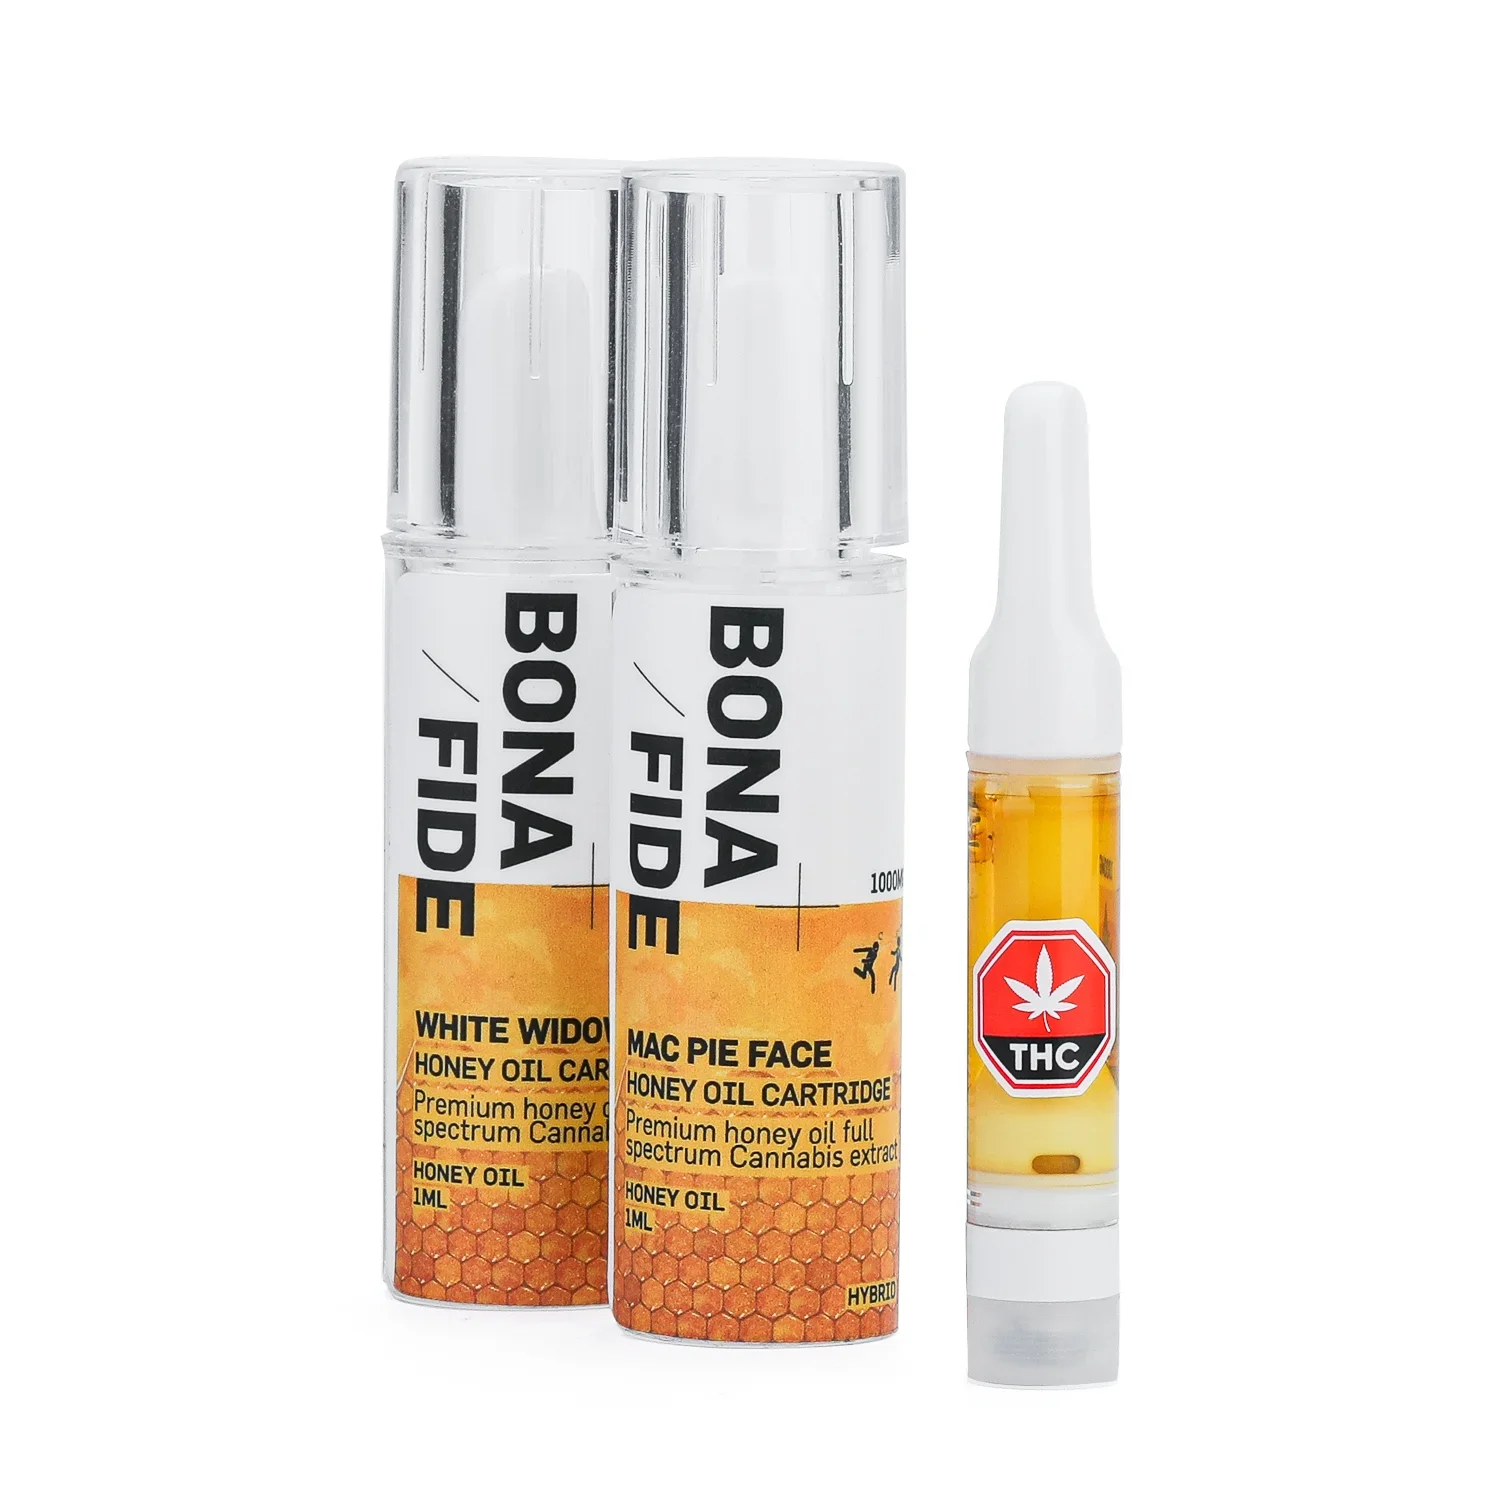 1g Honey Oil Cartridge (Bonafide) - Hive Marketplace